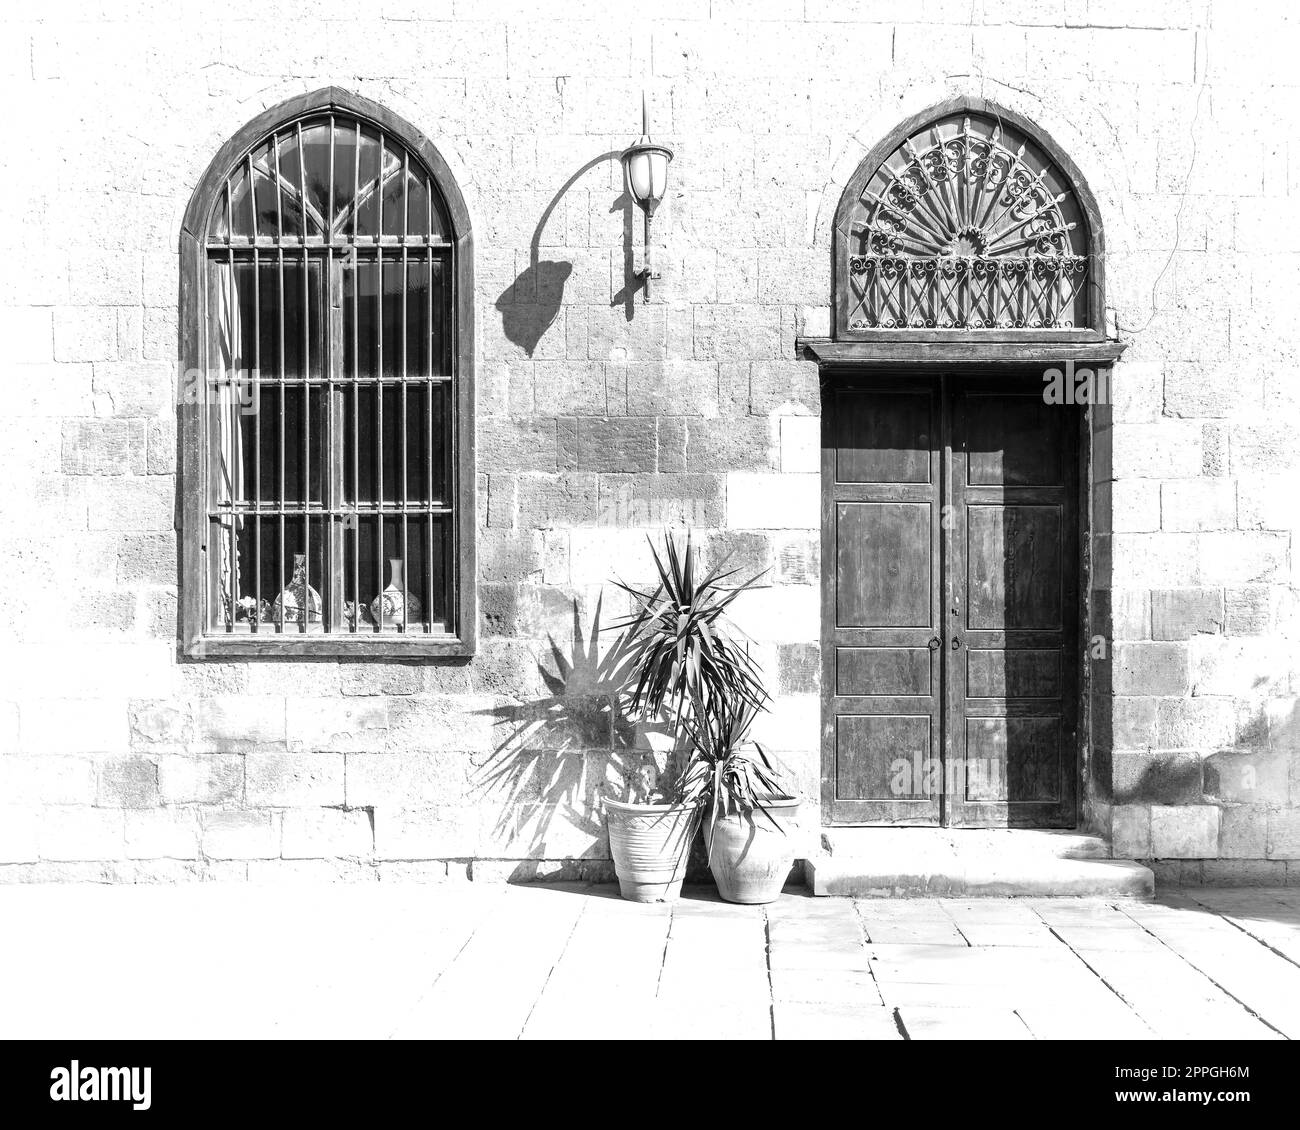 Noir et blanc contraste élevé de mur de briques avec porte en bois et fenêtre en fer forgé dans une journée ensoleillée Banque D'Images